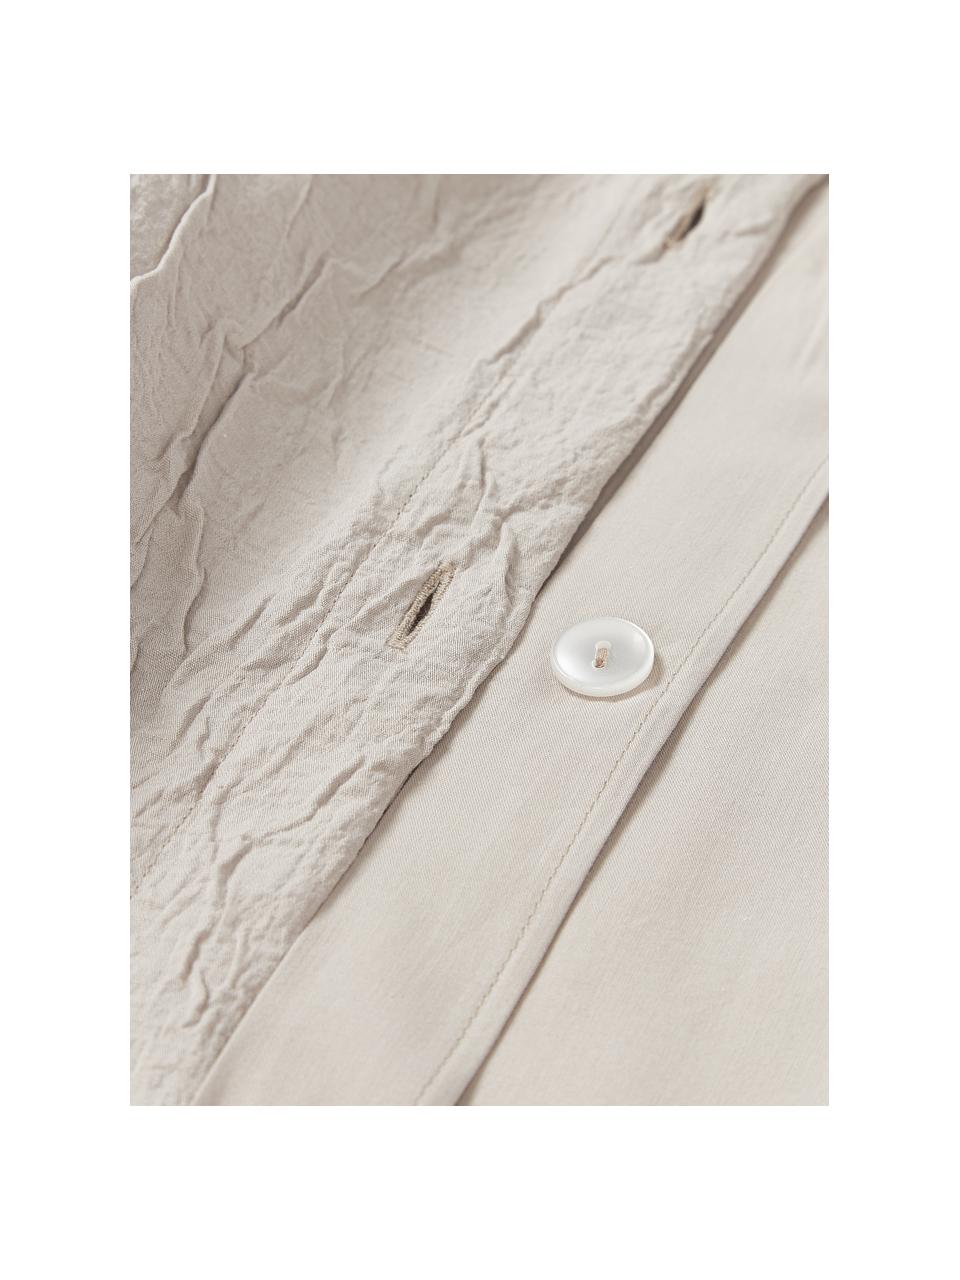 Copripiumino in cotone percalle lavato Leonora, Retro: 100% cotone, Beige chiaro, Larg. 200 x Lung. 200 cm